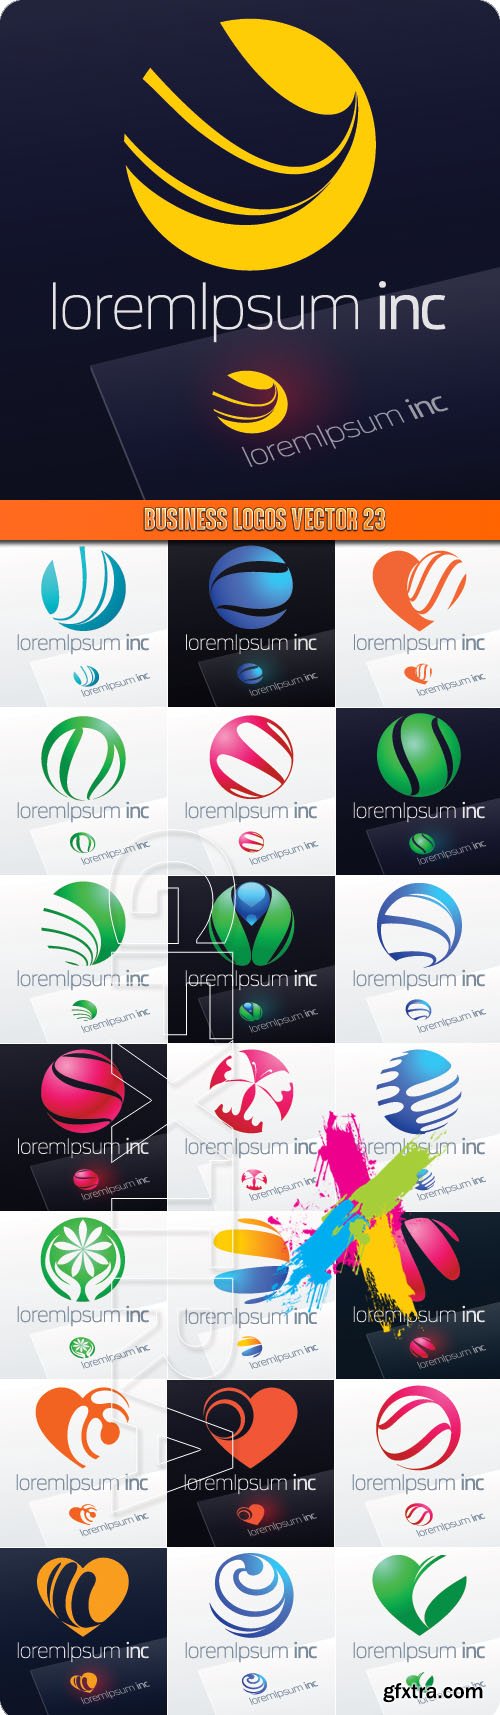 Business logos vector 23